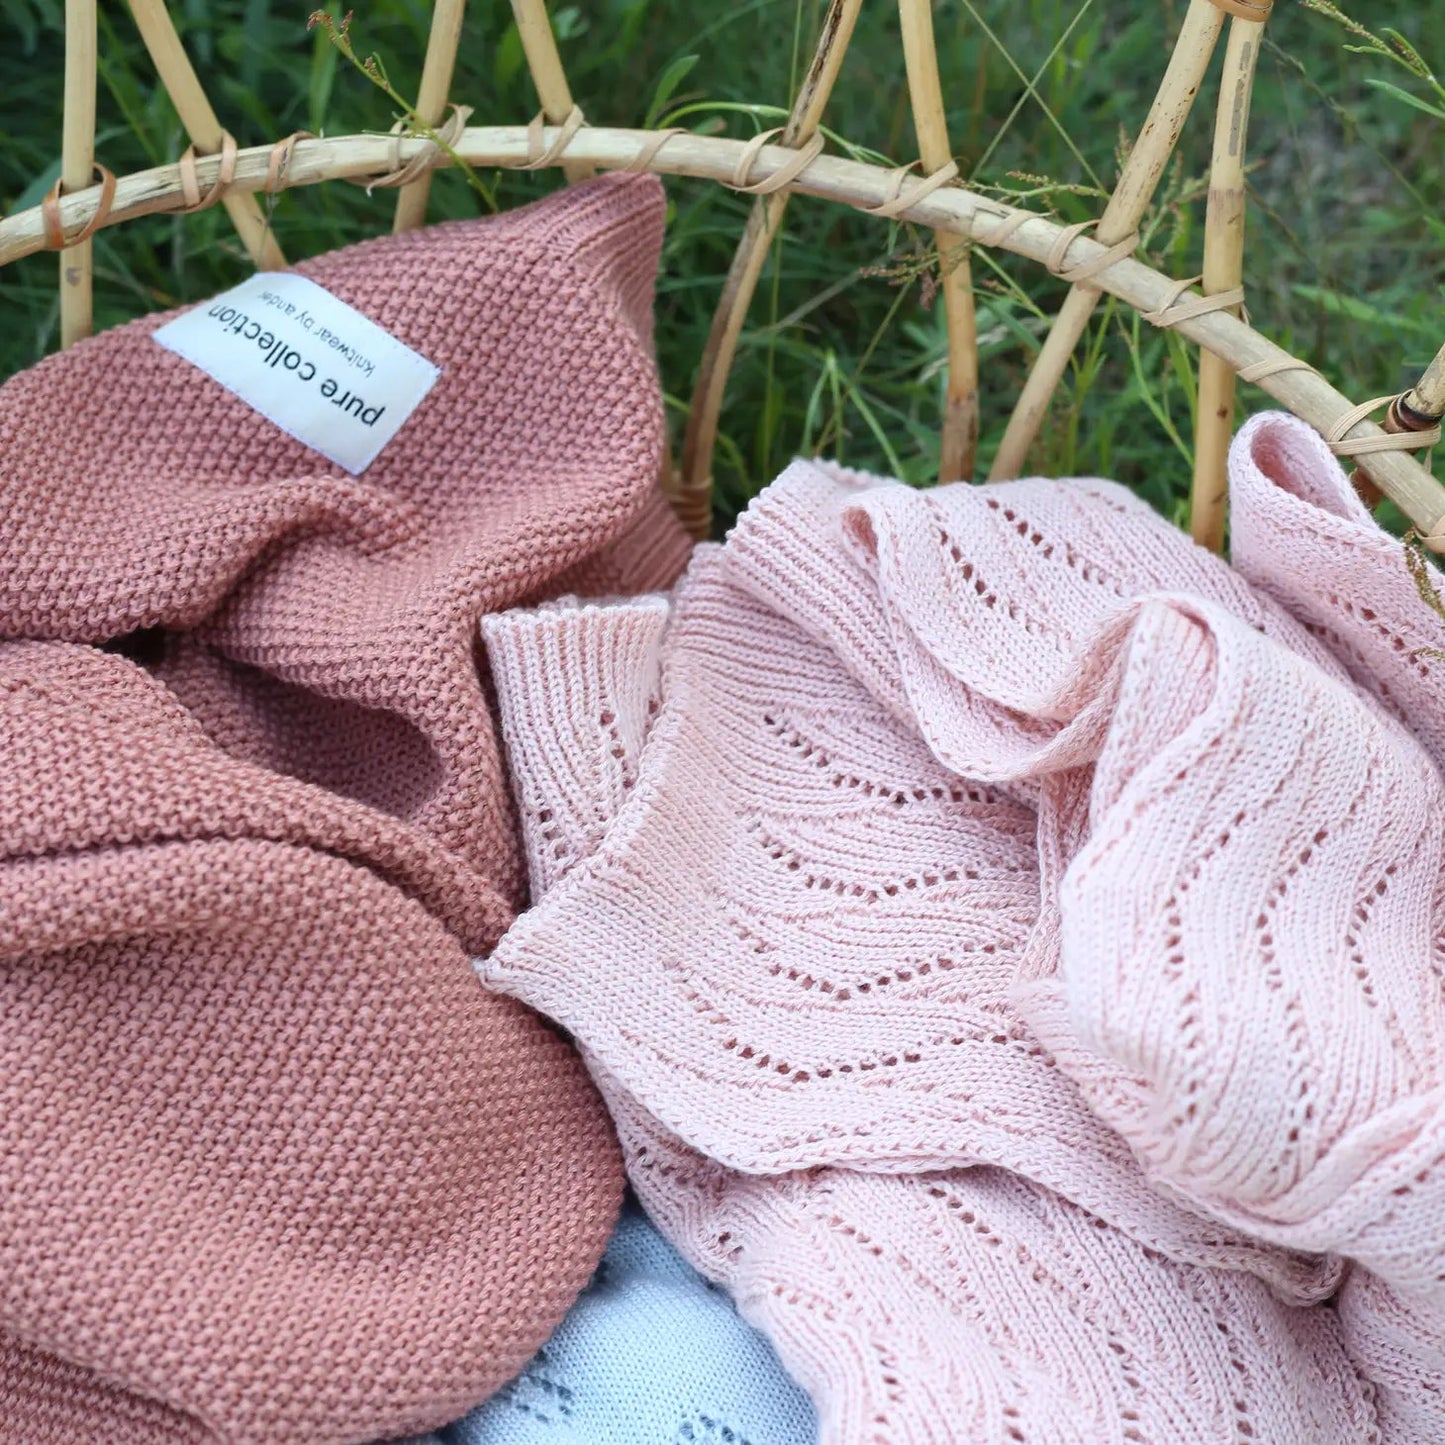 Ander - 100% Merino Wool blanket Abelardo - Beige color - Playlaan